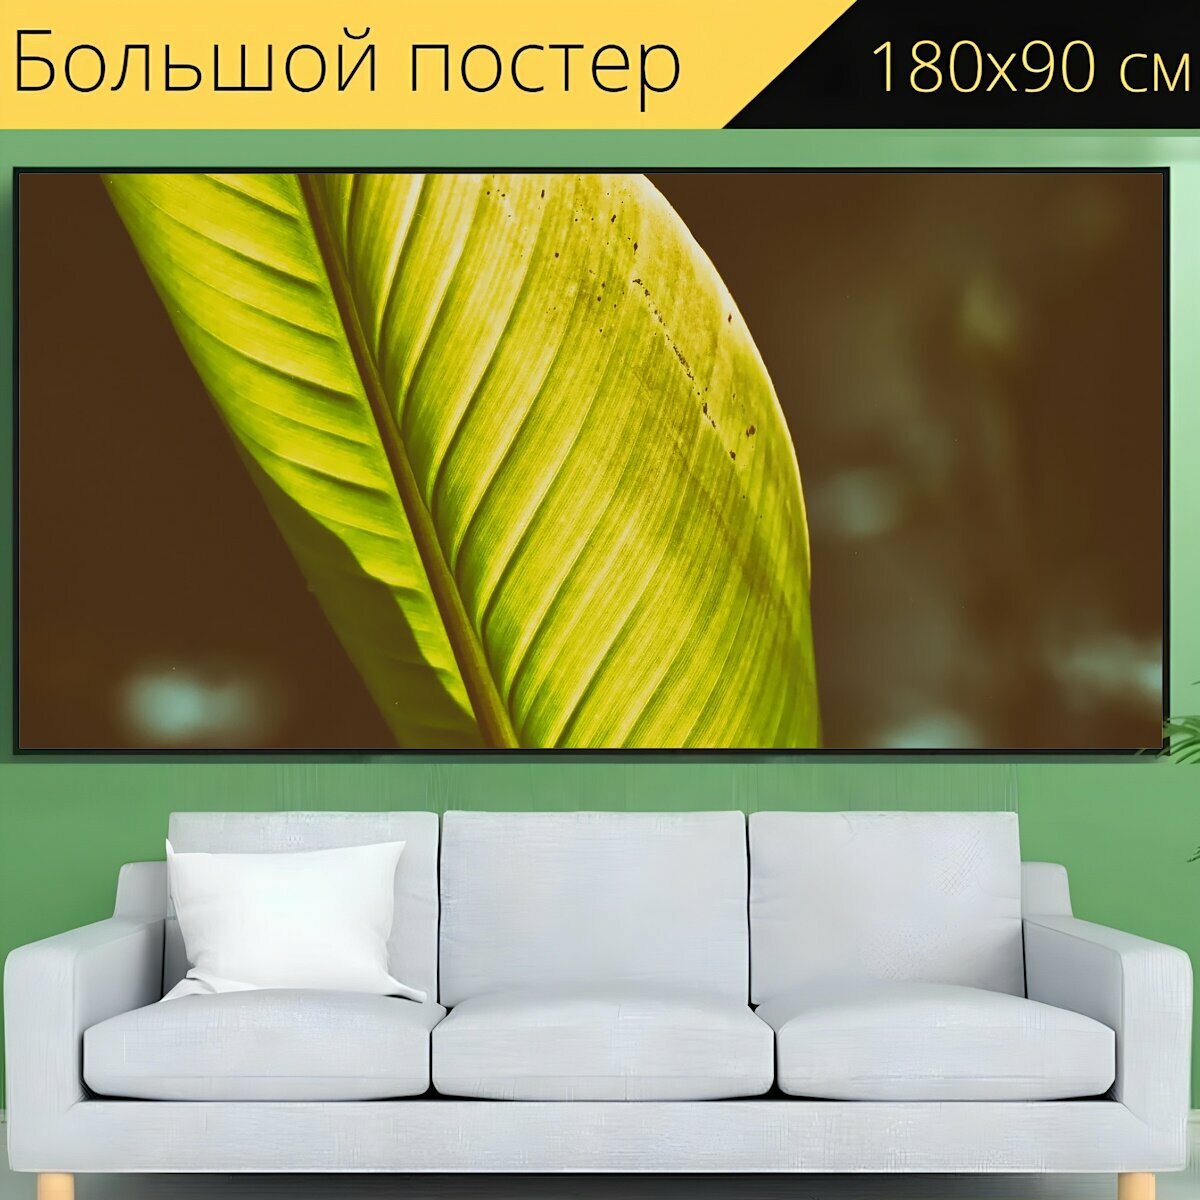 Большой постер "Банановый лист, завод, зеленый" 180 x 90 см. для интерьера